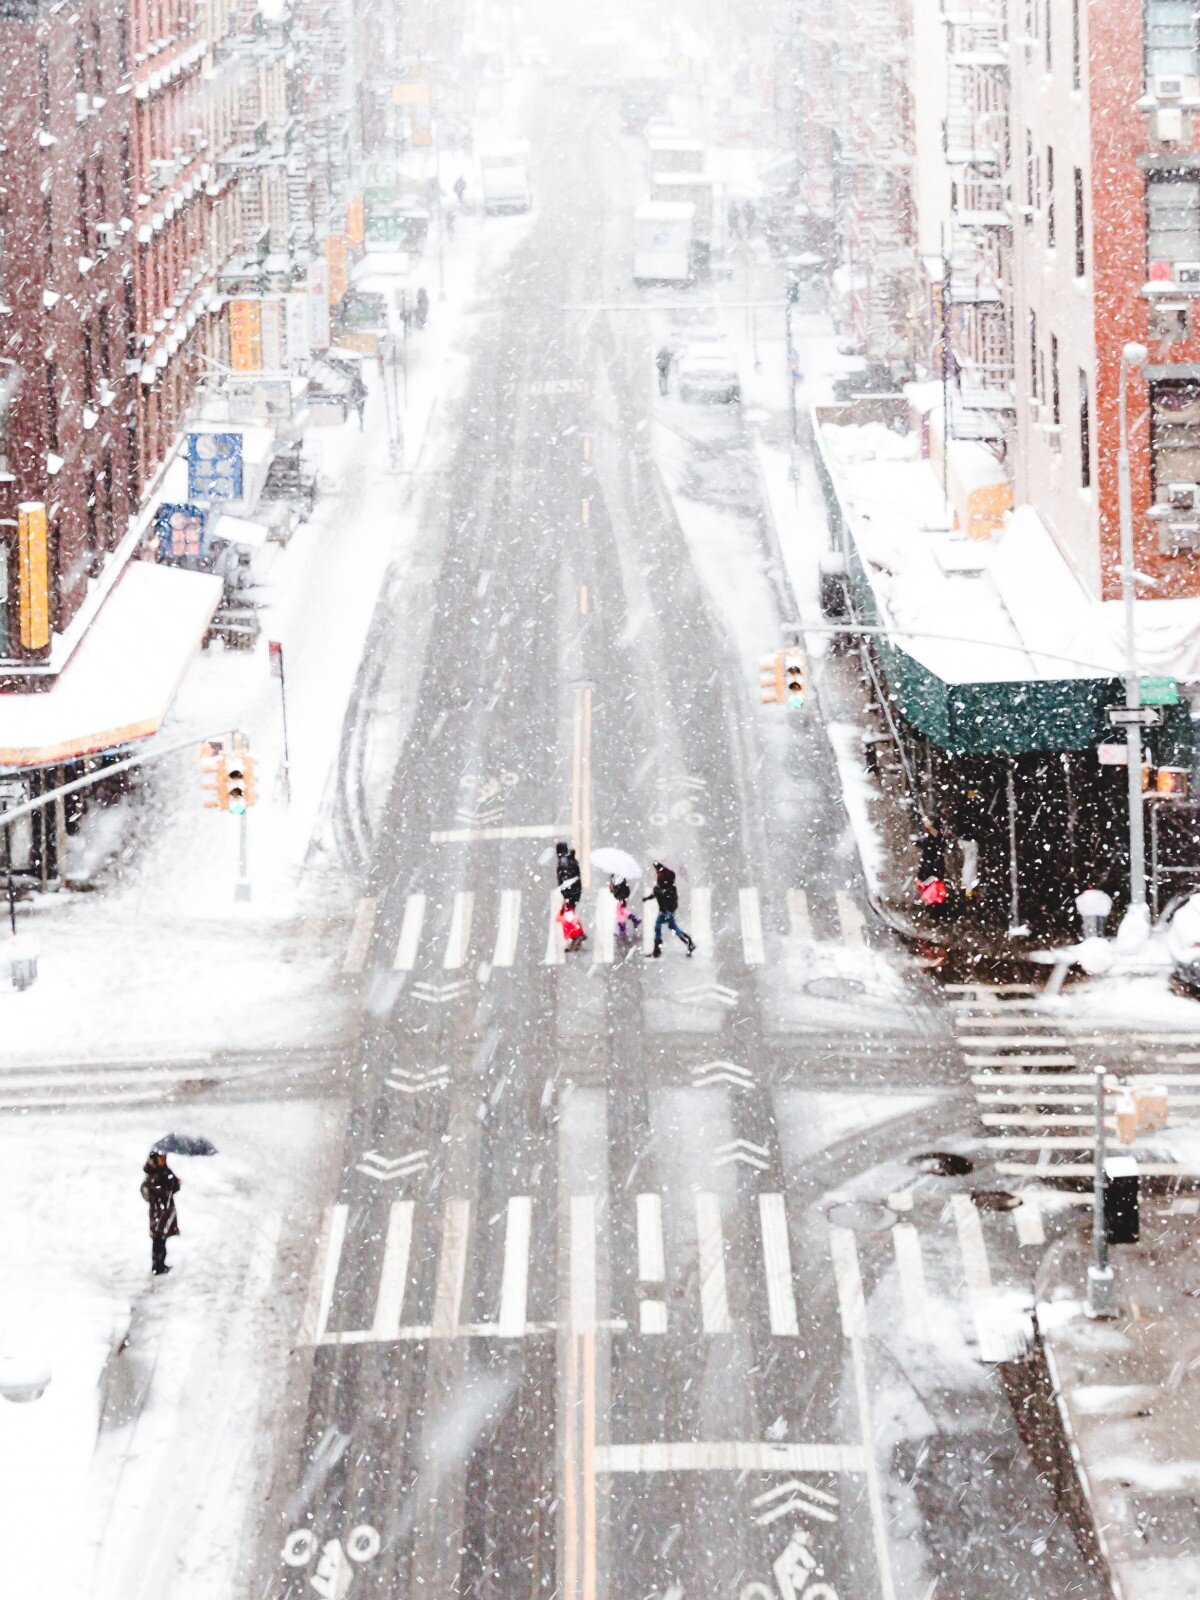 La imagen muestra la calle de una ciudad nevada